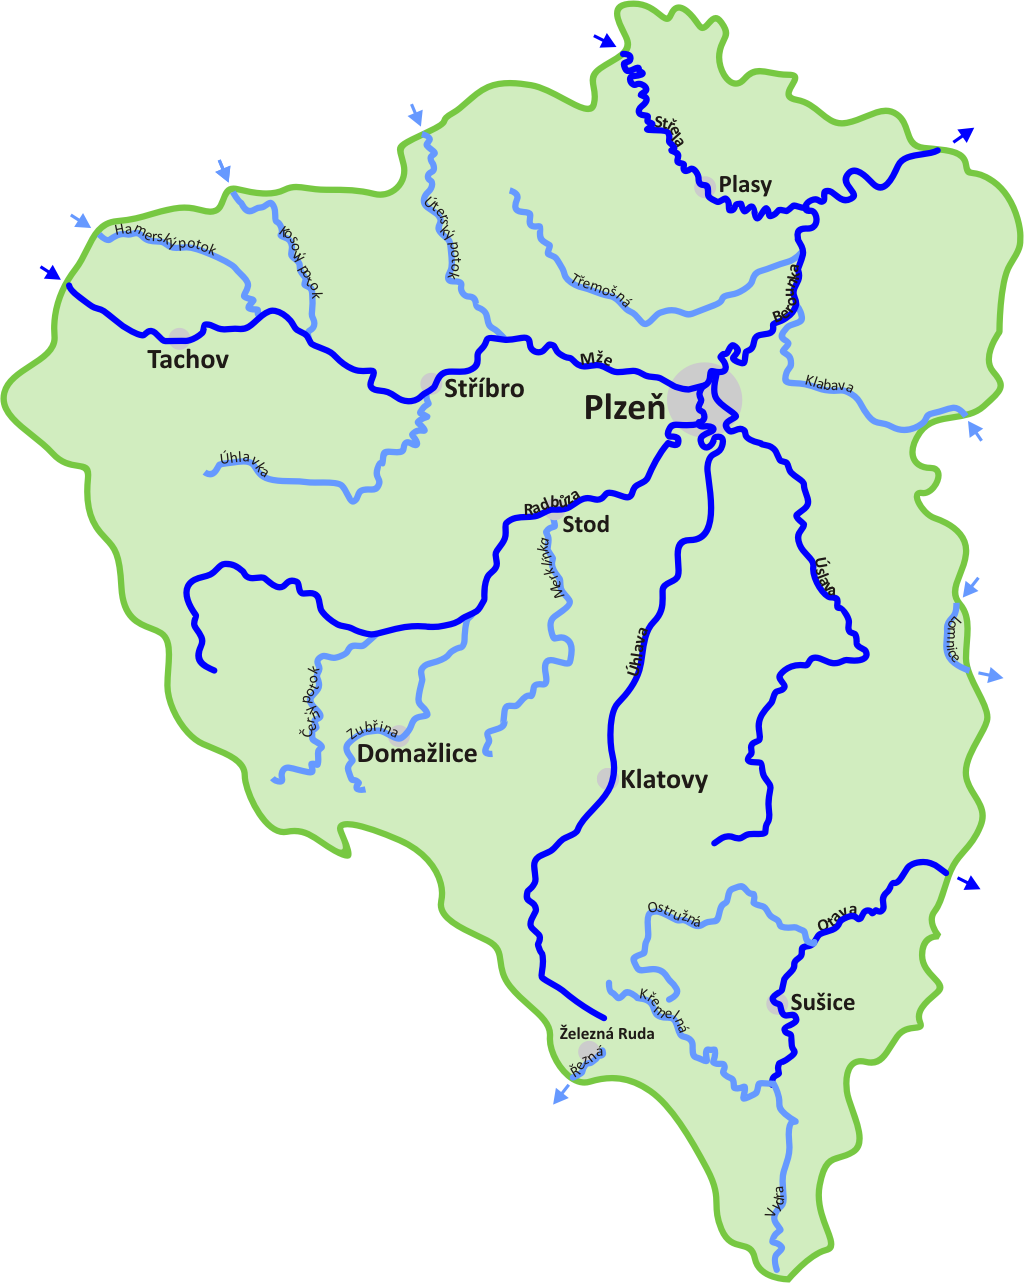 Jaká řeka vytéká z Plzně?